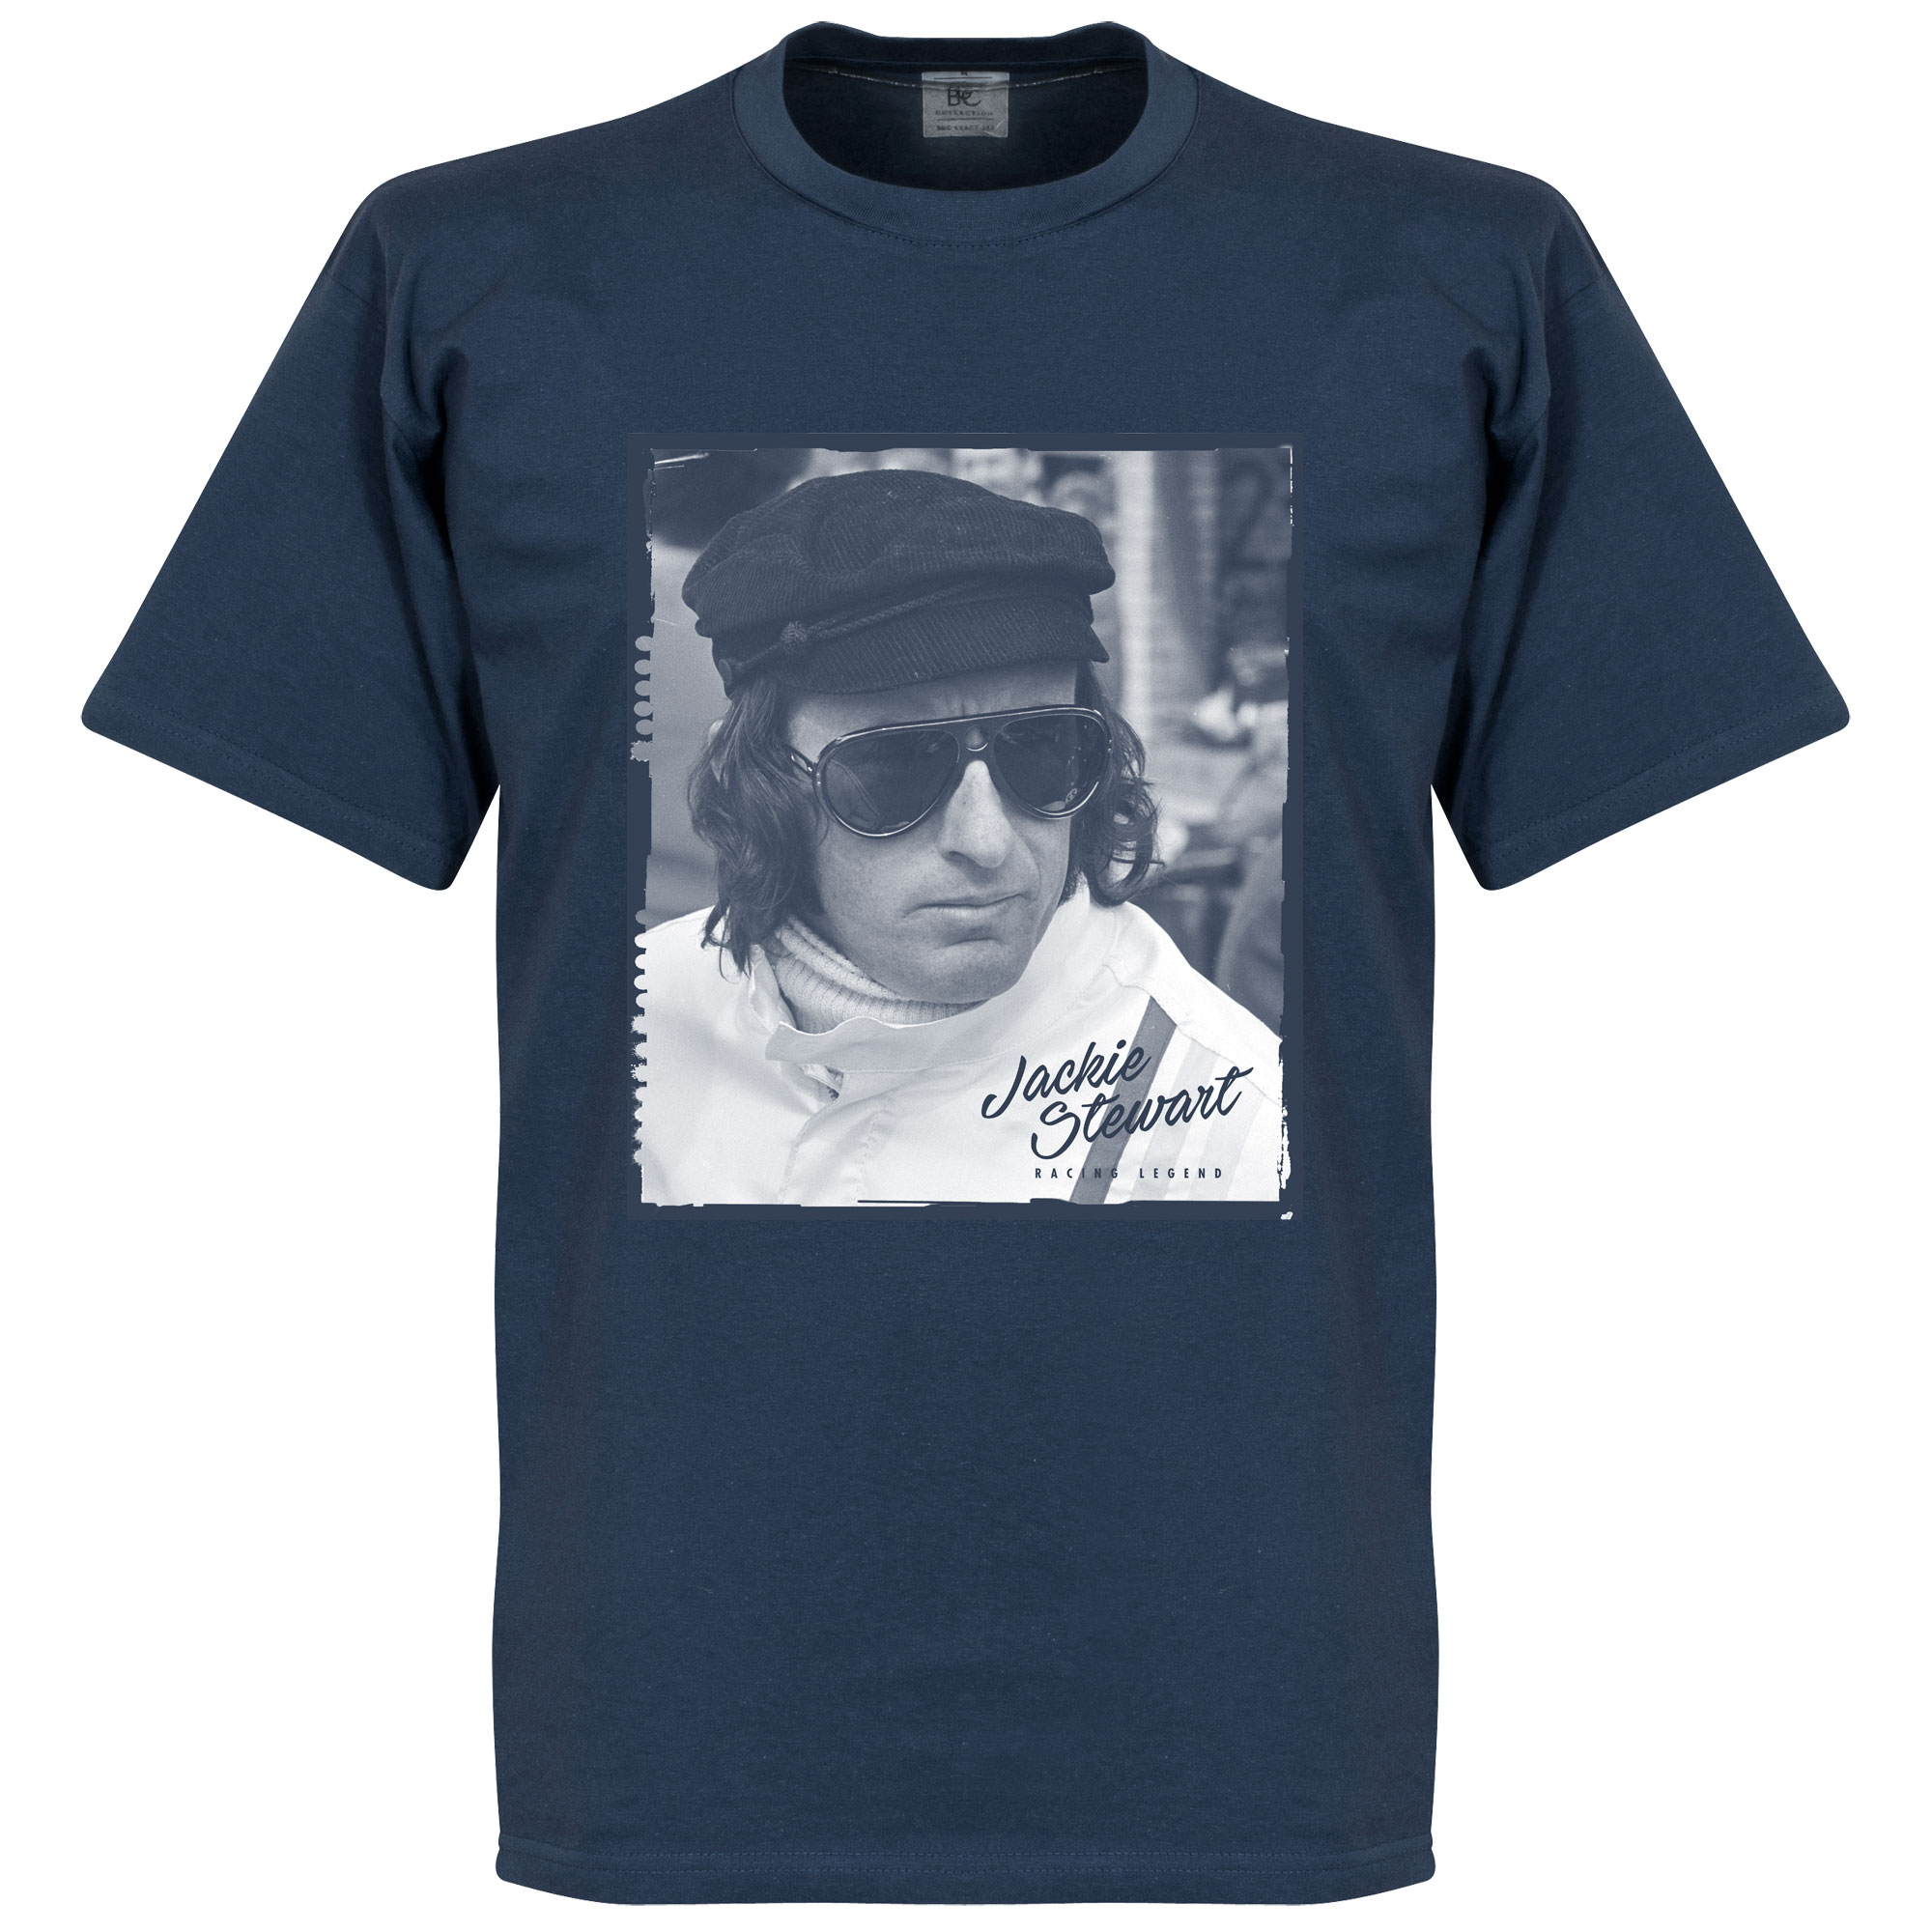 Jackie Stewart Portrait T-Shirt Navy Blauw